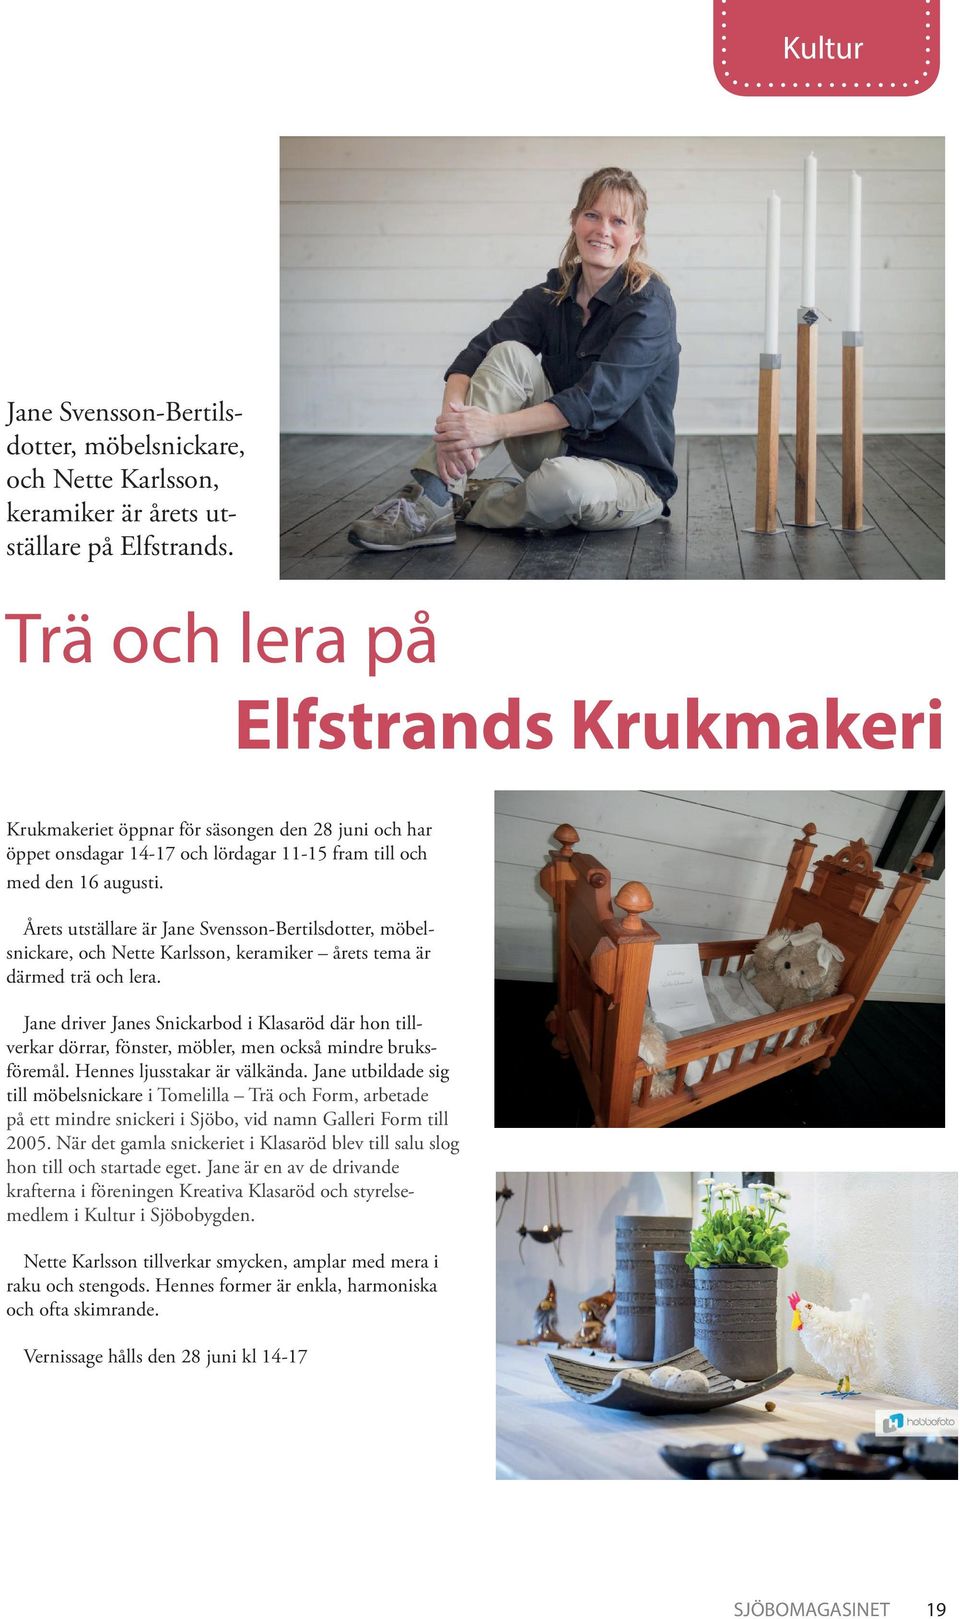 Årets utställare är Jane Svensson-Bertilsdotter, möbelsnickare, och Nette Karlsson, keramiker årets tema är därmed trä och lera.